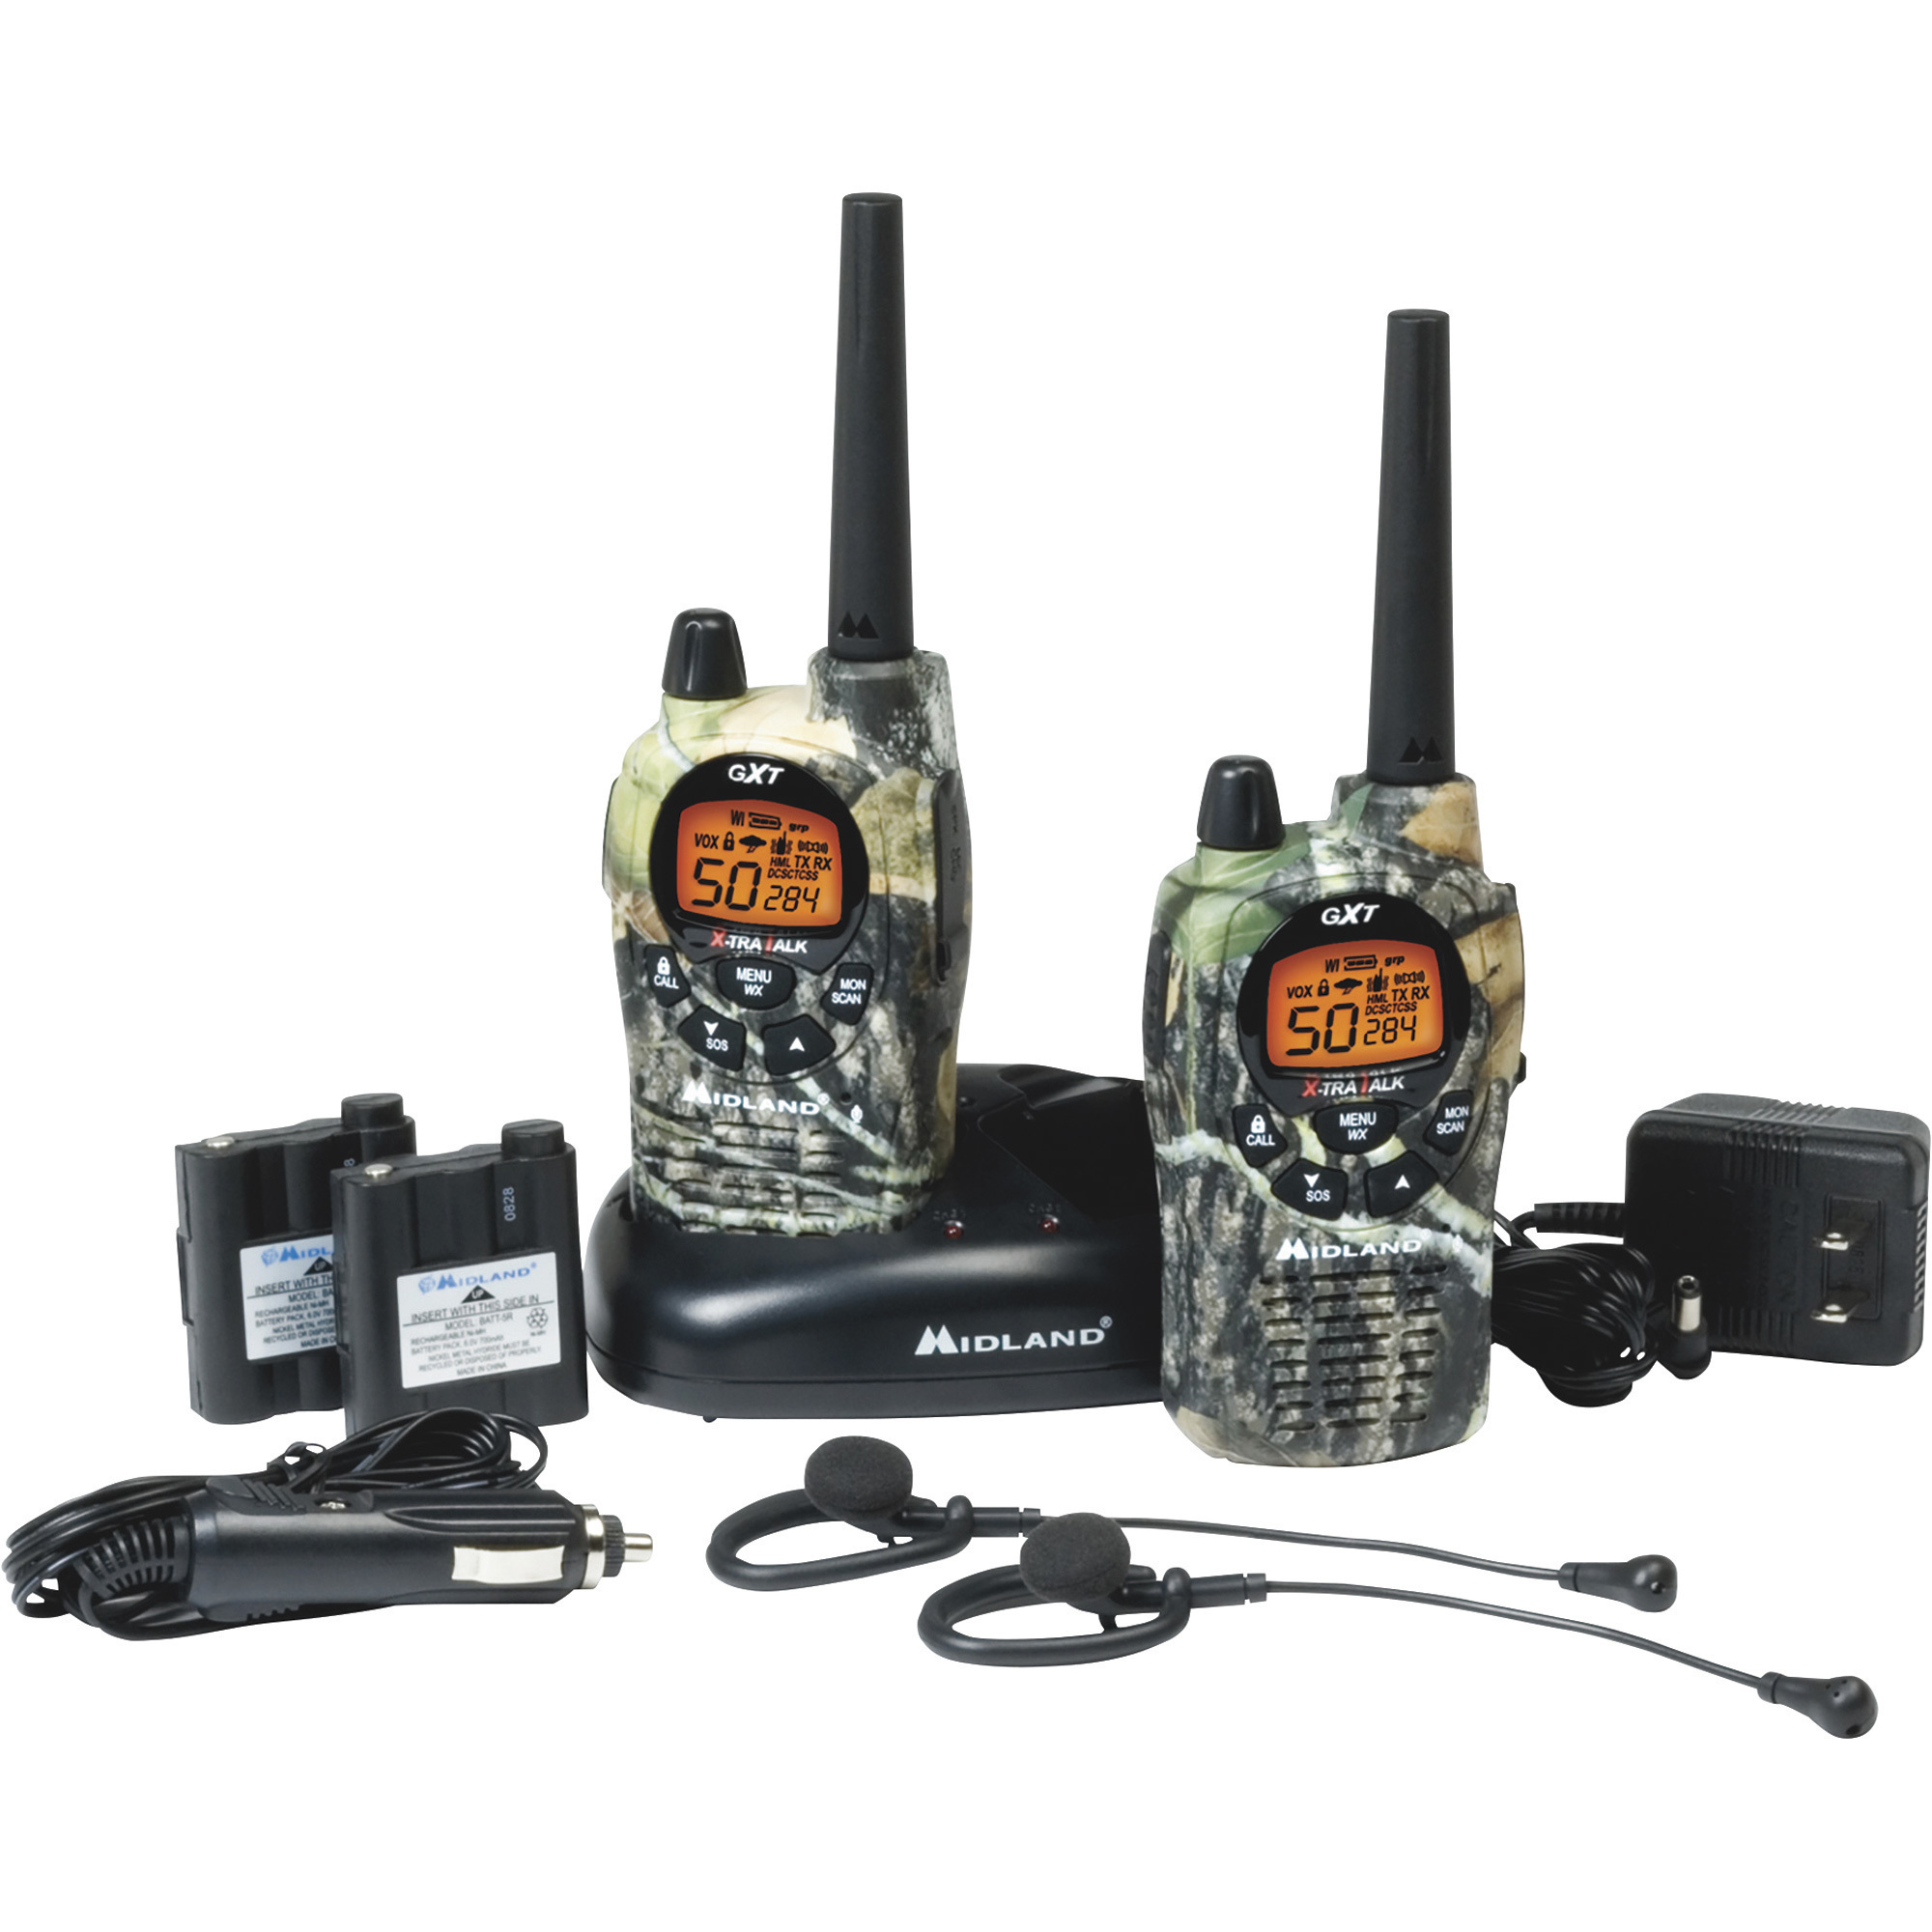 Midland Handheld GMRS Radio, Pair, 36-Mile Range, Model GXT1050VP4